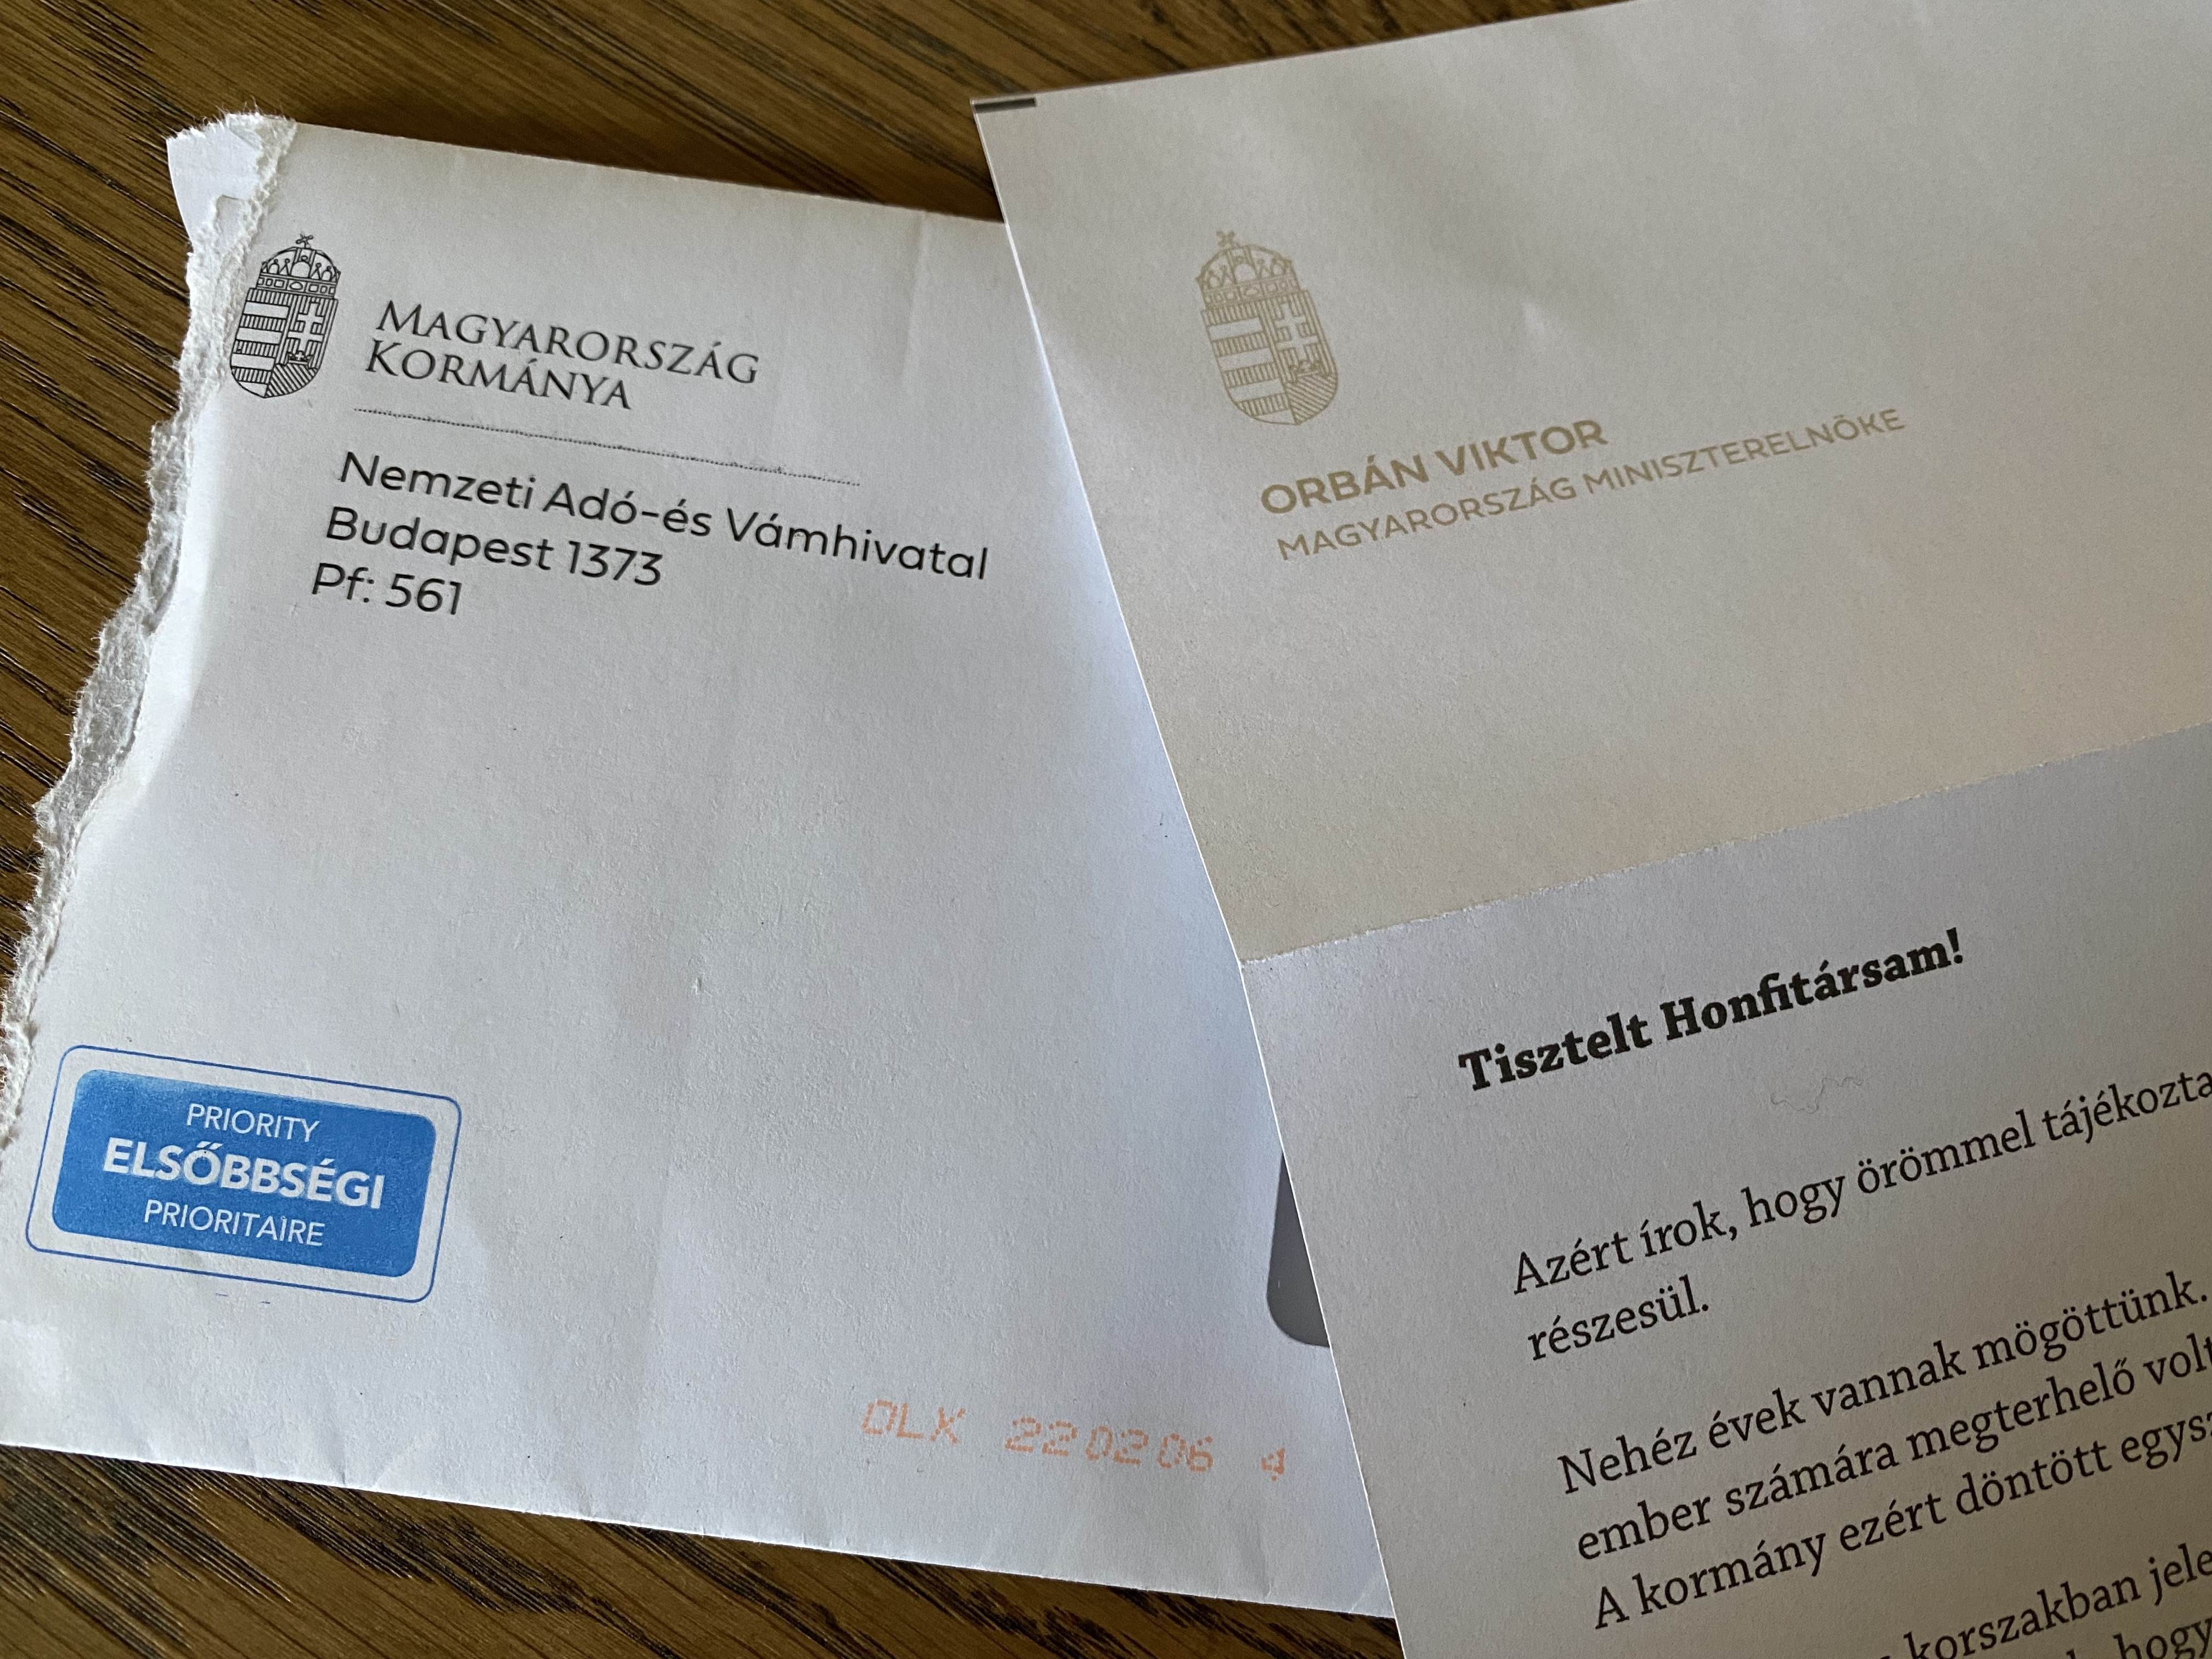 Orbán Viktor kampányszlogennel dúsított NAV-os levelet küldött a szülőknek, miszerint: Gyurcsány!